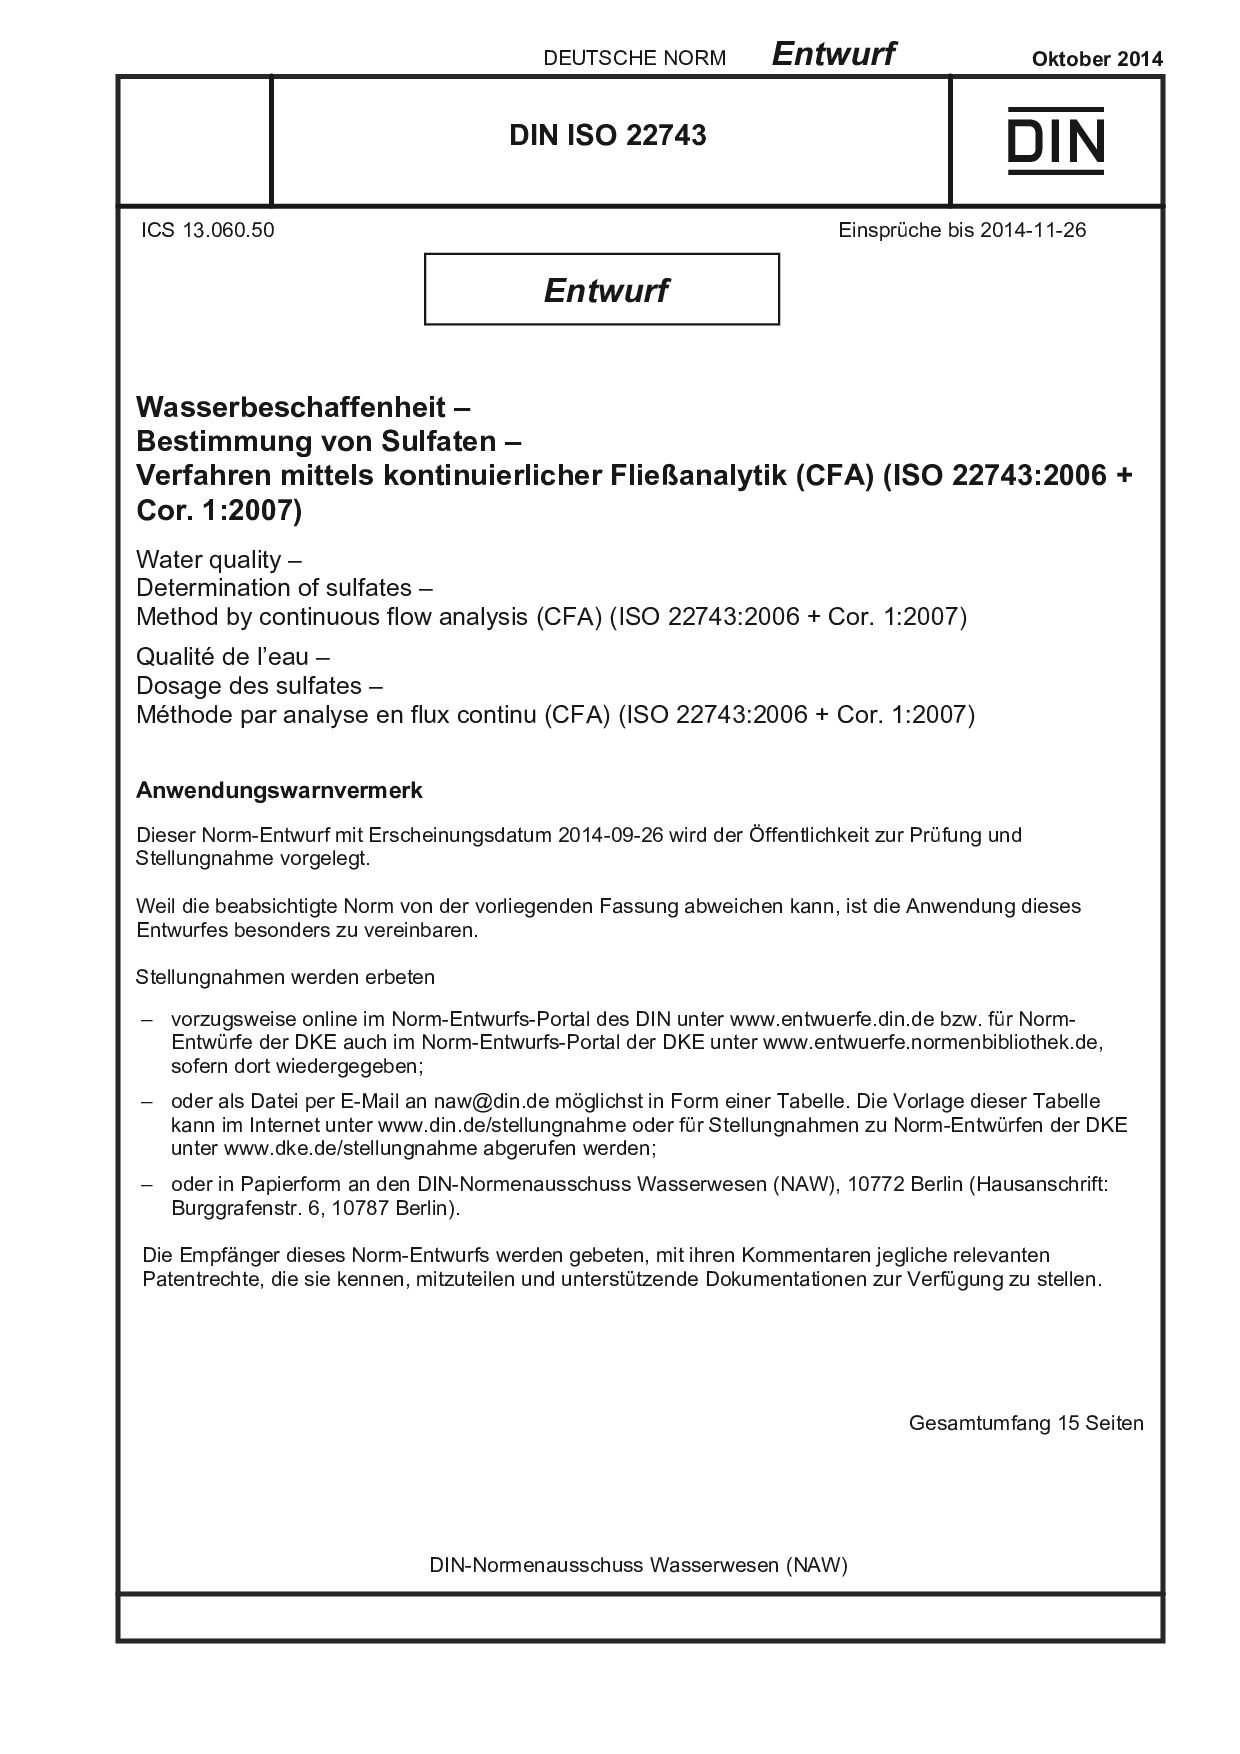 DIN ISO 22743 E:2014-10